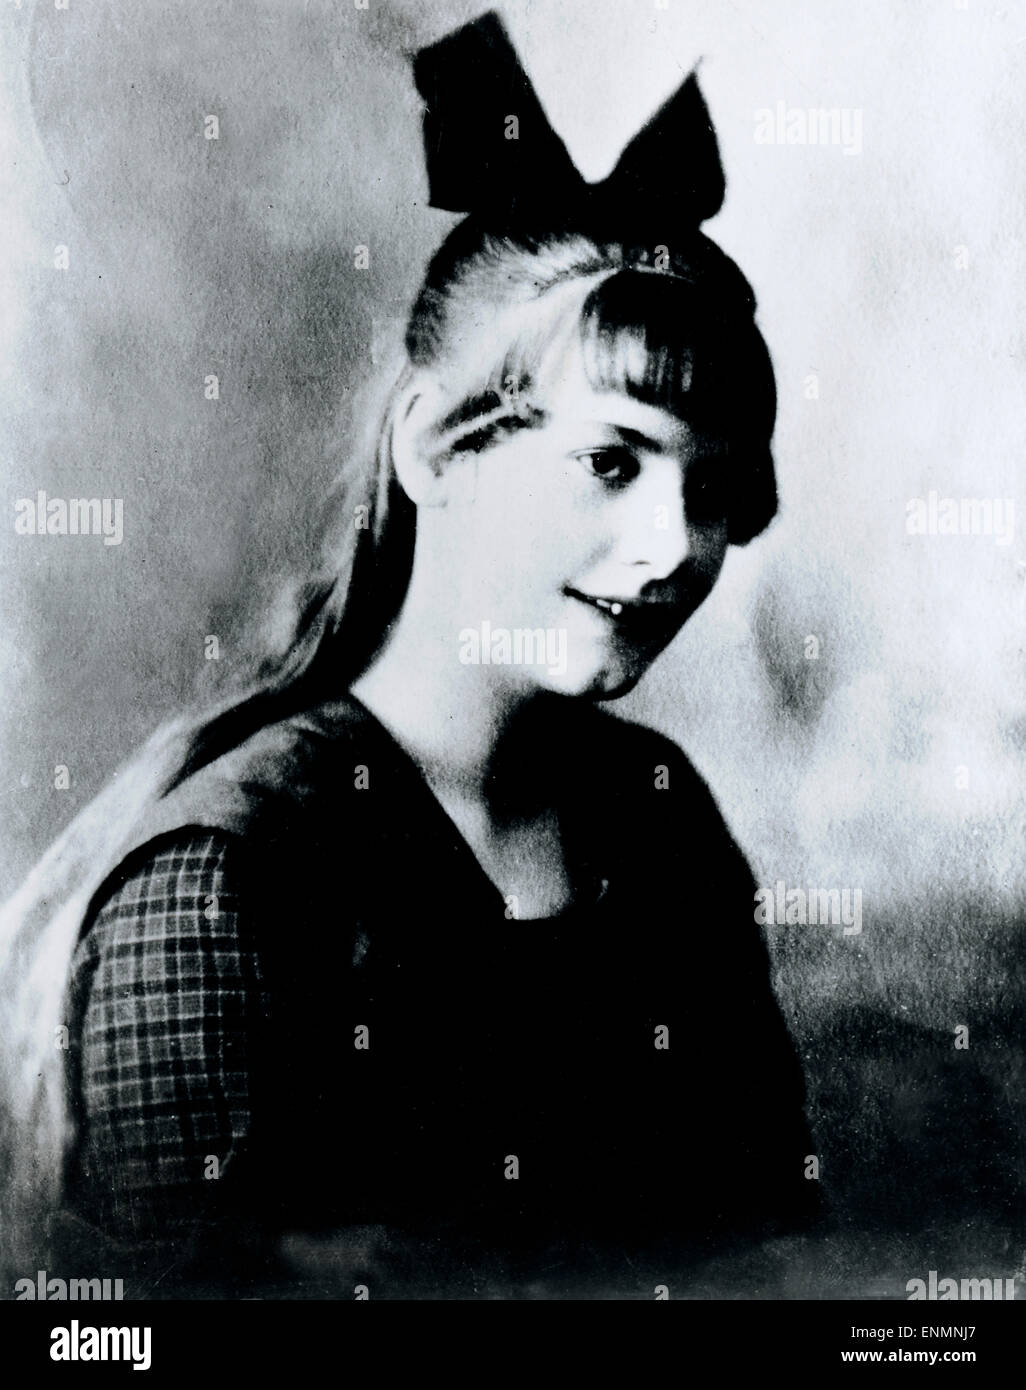 Die schwedische Filmschauspielerin Gerta Garbo (1905 - 1990) als junges Mädchen. Stock Photo